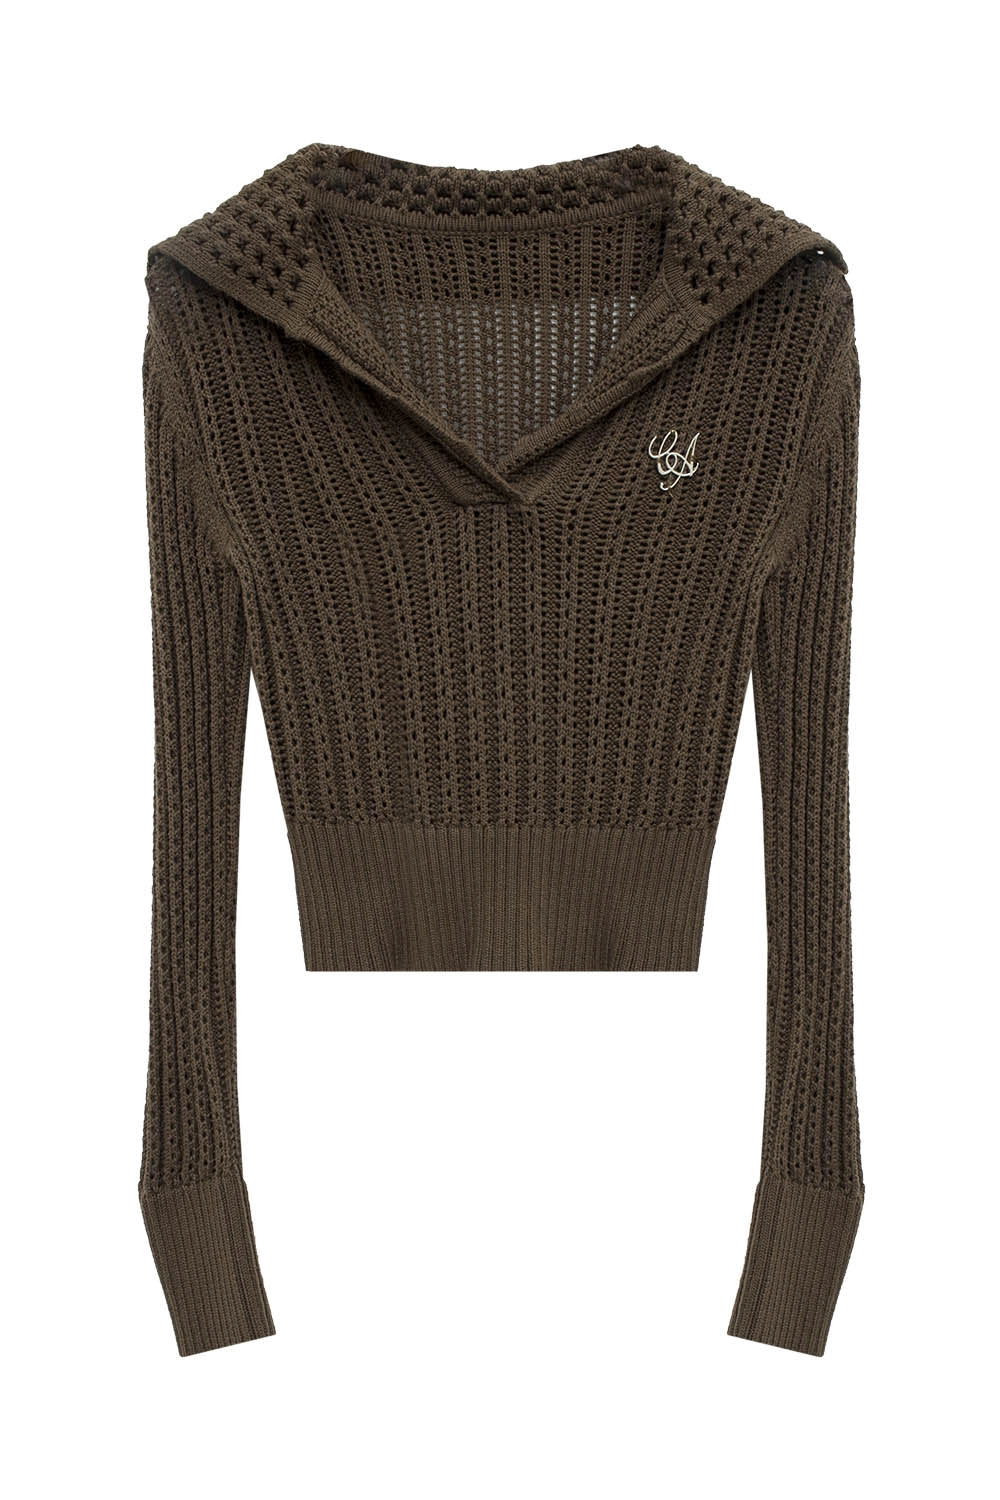 Sweater Bertudung Knit Ringan Wanita dengan Perincian Renda